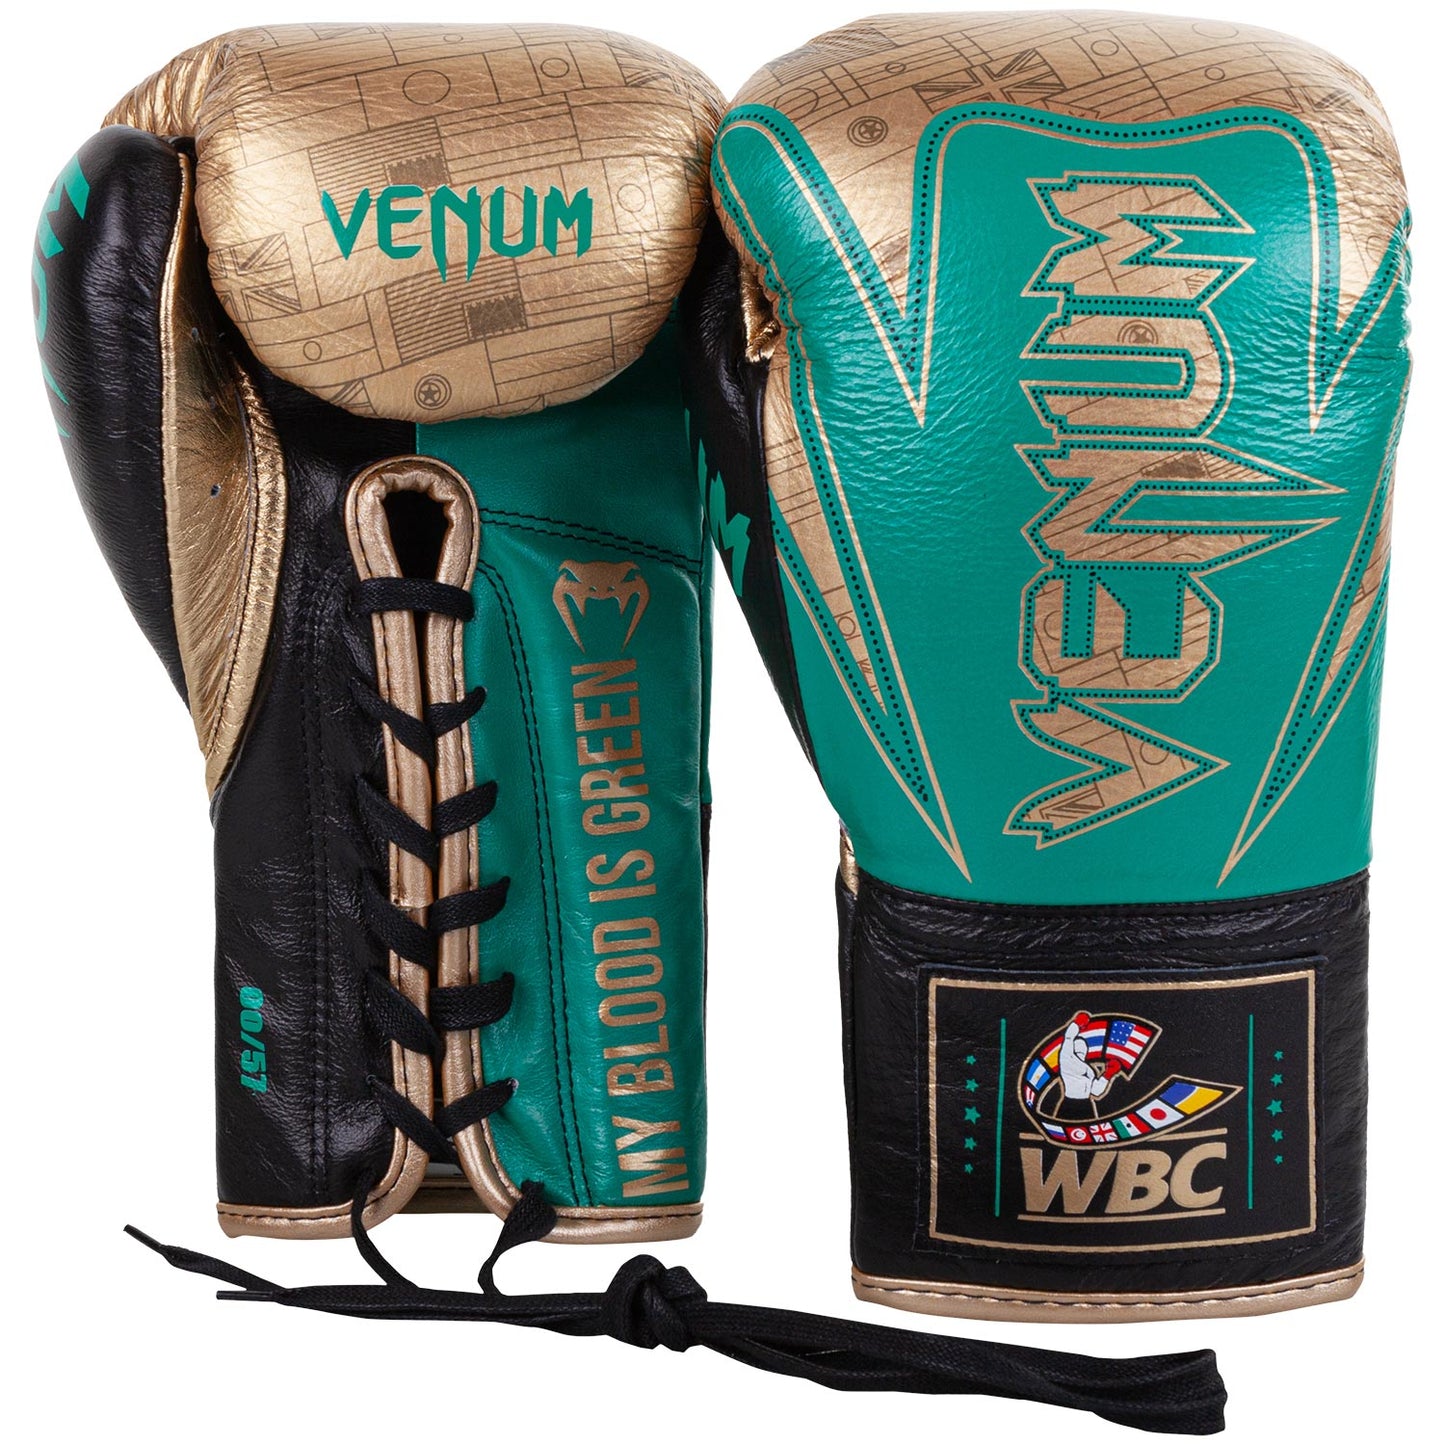 Venum HAMMER professionelle Boxhandschuhe - WBC limitierte Auflage - MIT SCHNÜRUNG - Metallicgrün/Gold